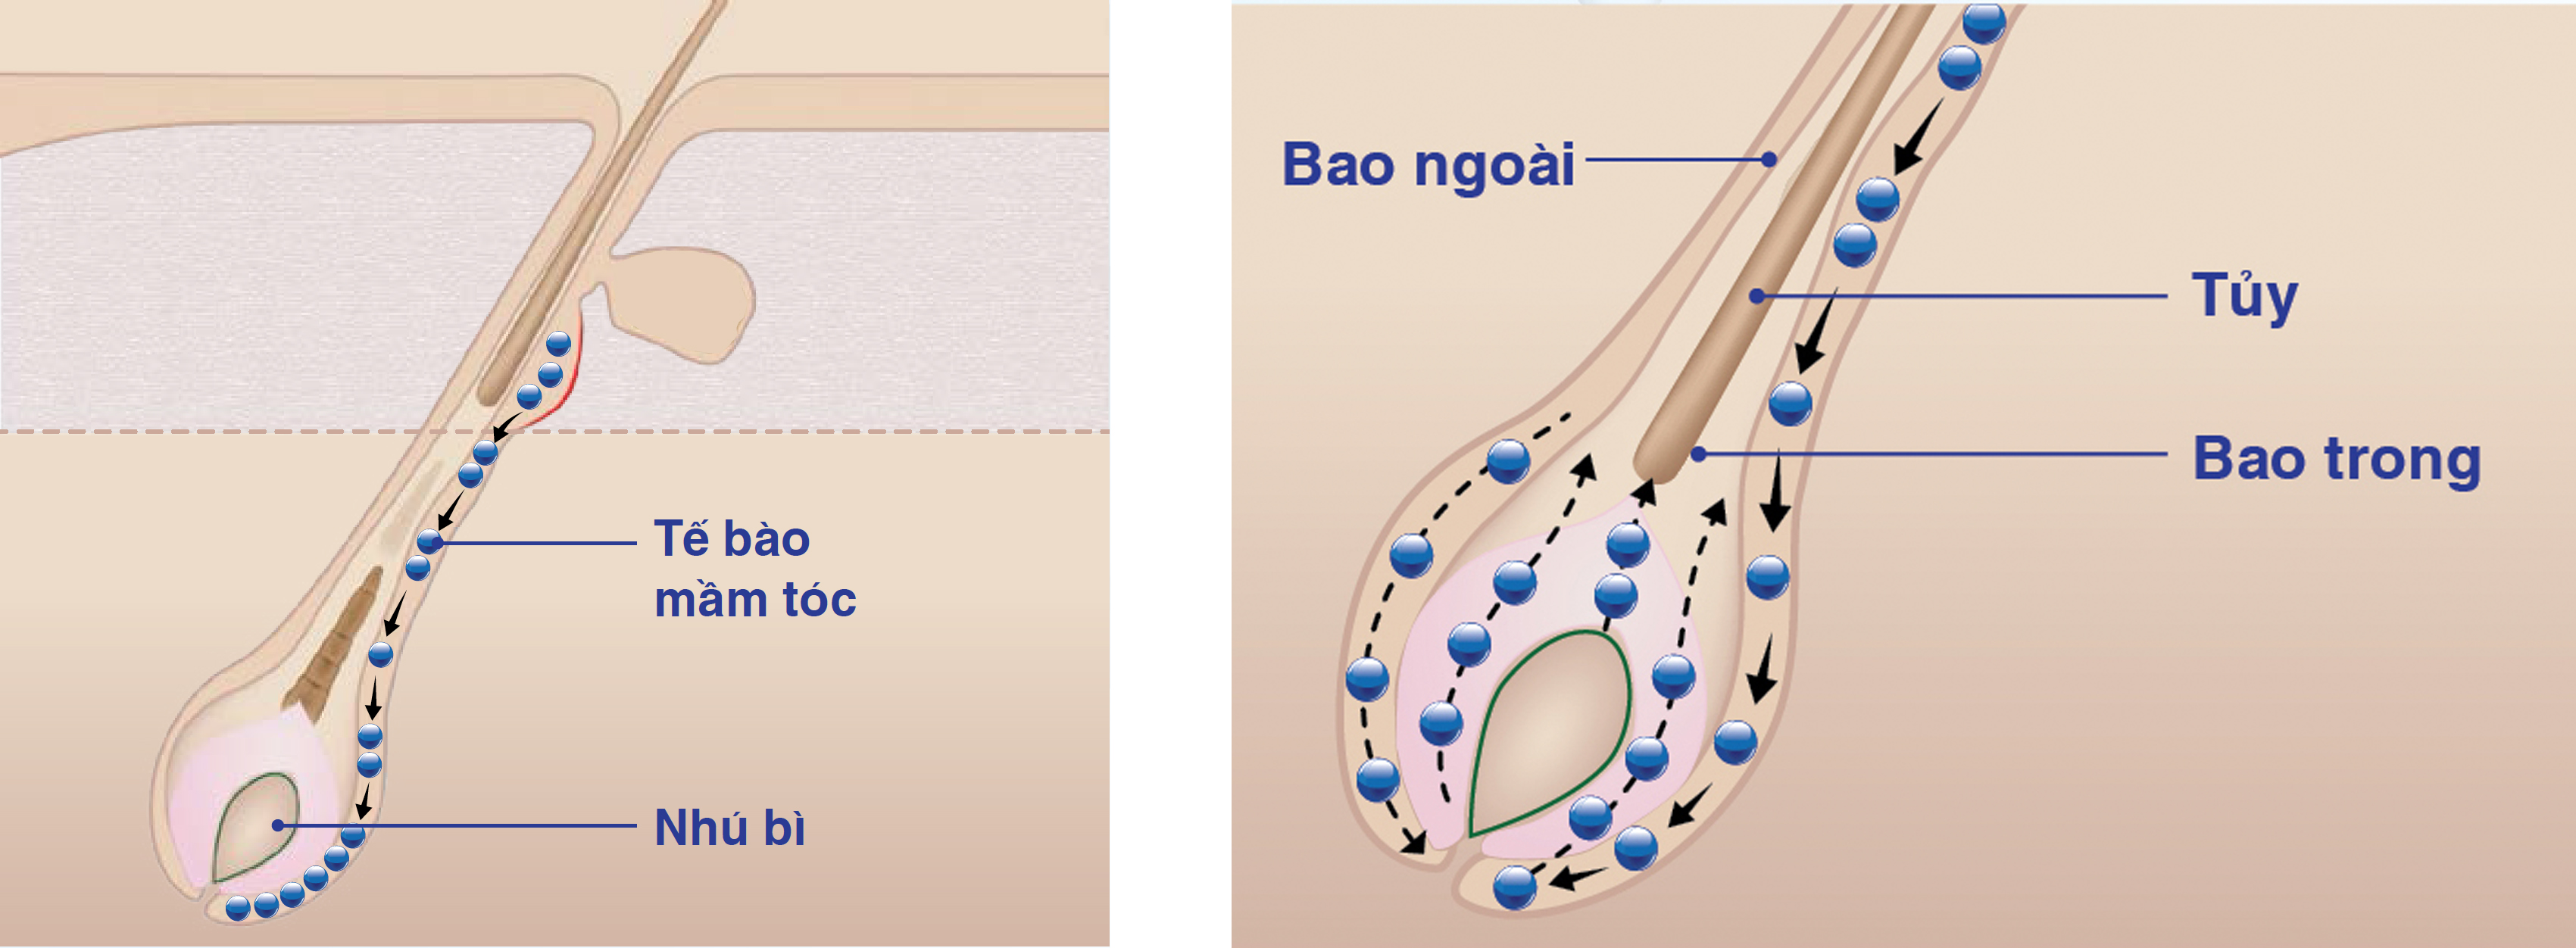 (1) Tế bào mầm tóc di chuyển xuống nhú bì (2) Tế bào mầm tóc biệt hóa thành các bộ phận của sợi tóc